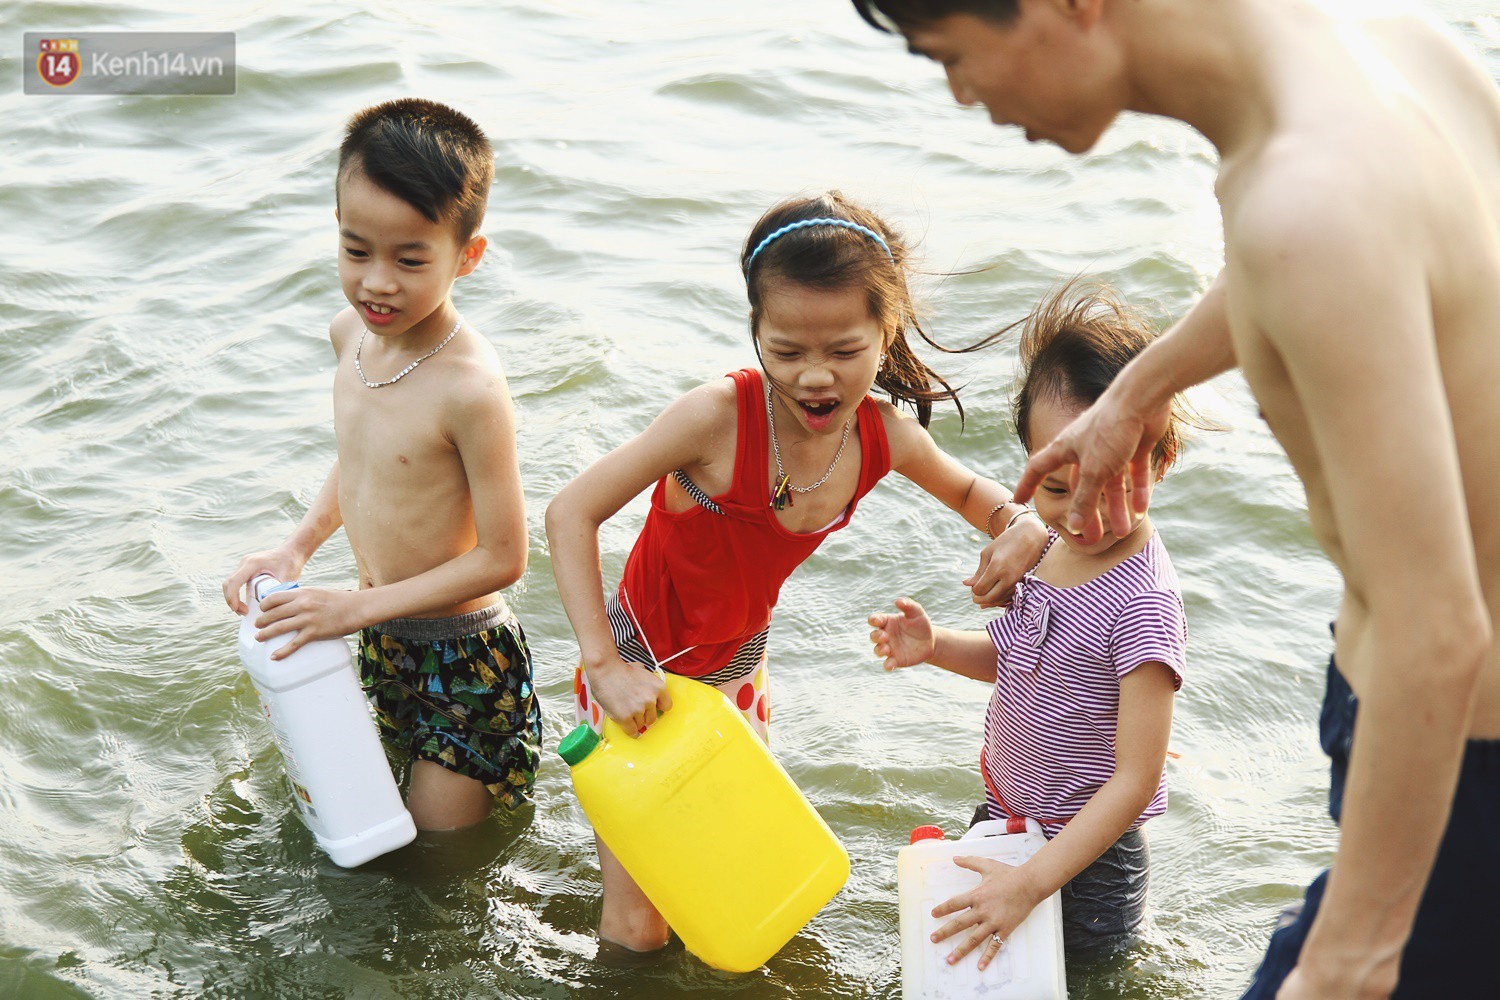 Nắng nóng oi bức, người dân Thủ đô bế chó cưng ra Hồ Tây cùng tắm để giải nhiệt dù có biển cấm - Ảnh 7.